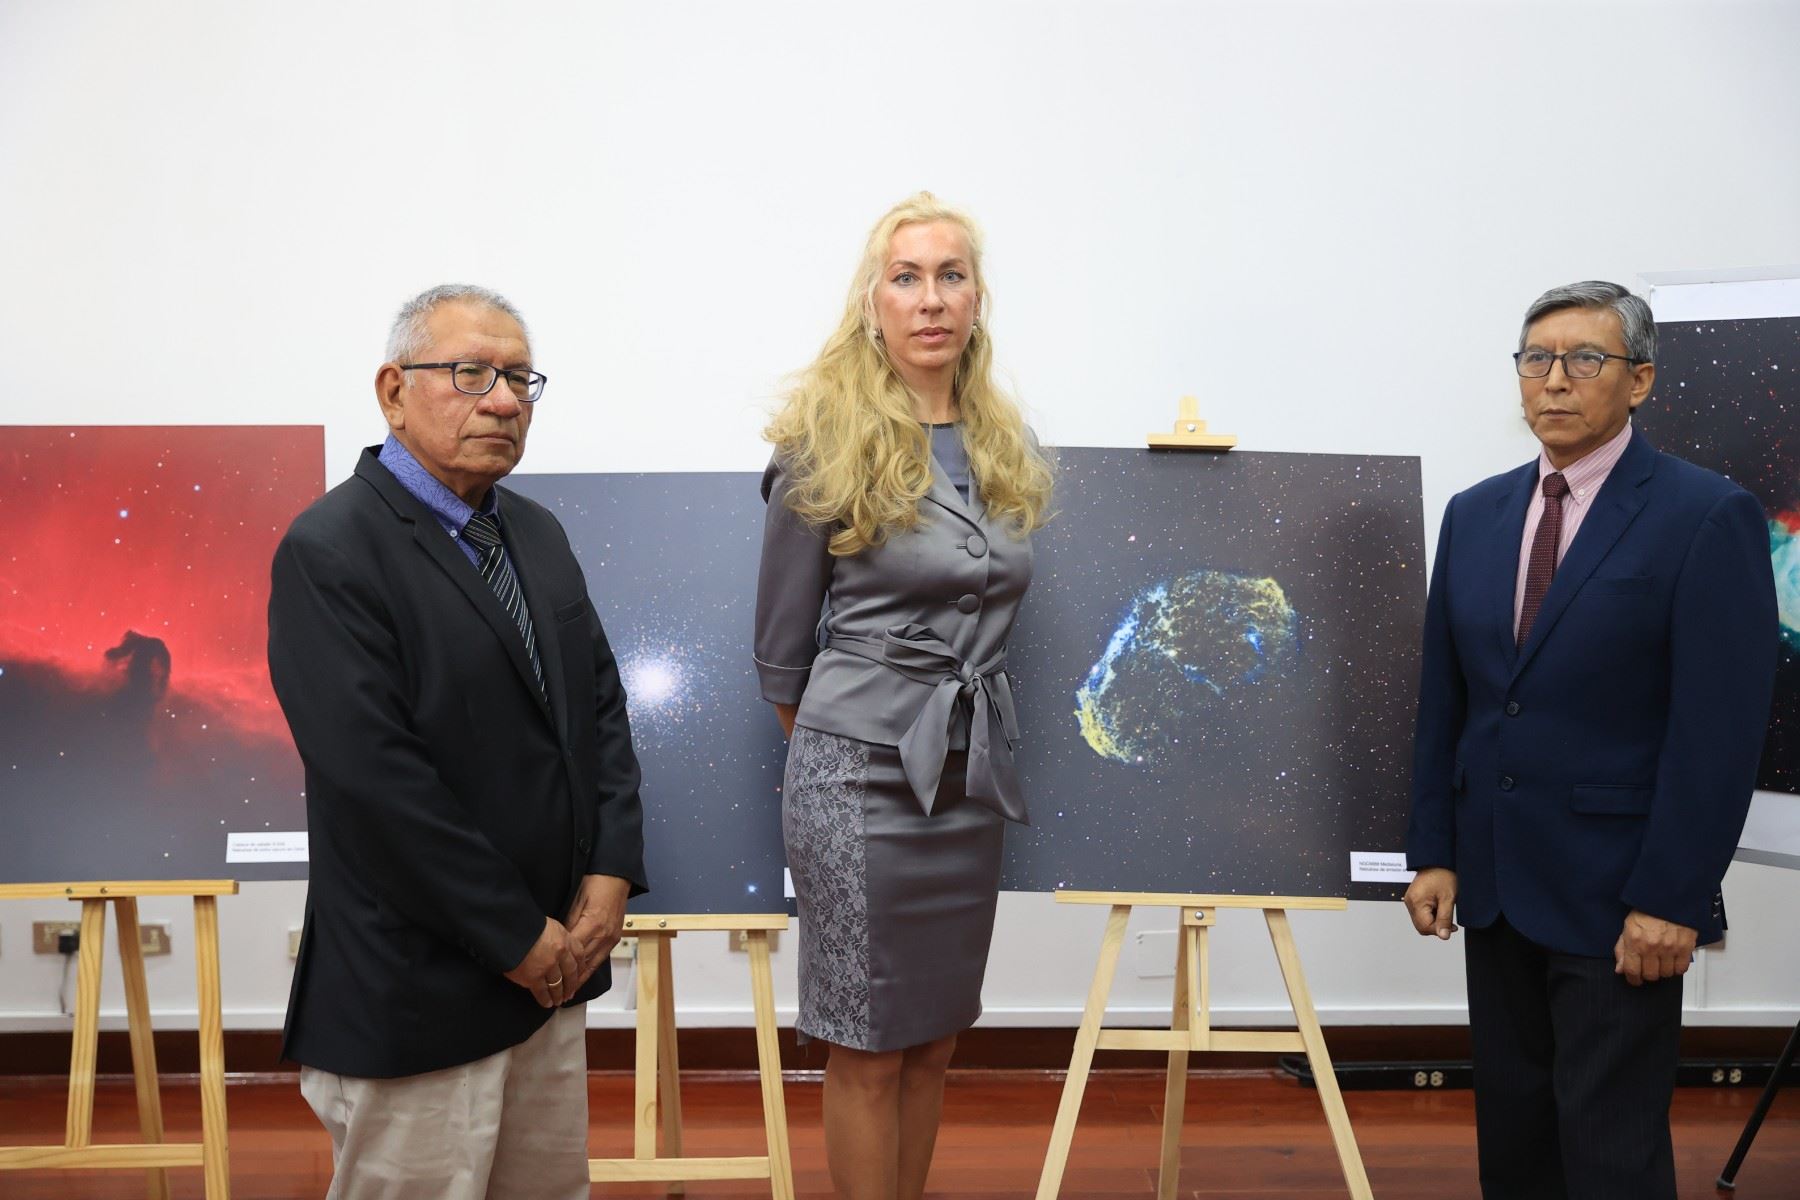 De izquierda a derecha: Edmundo Norabuena, director científico del IGP; Natalia Sentenkova, encargada de negocios interina de Rusia en Perú; y Hernando Tavera, presidente ejecutivo del IGP.